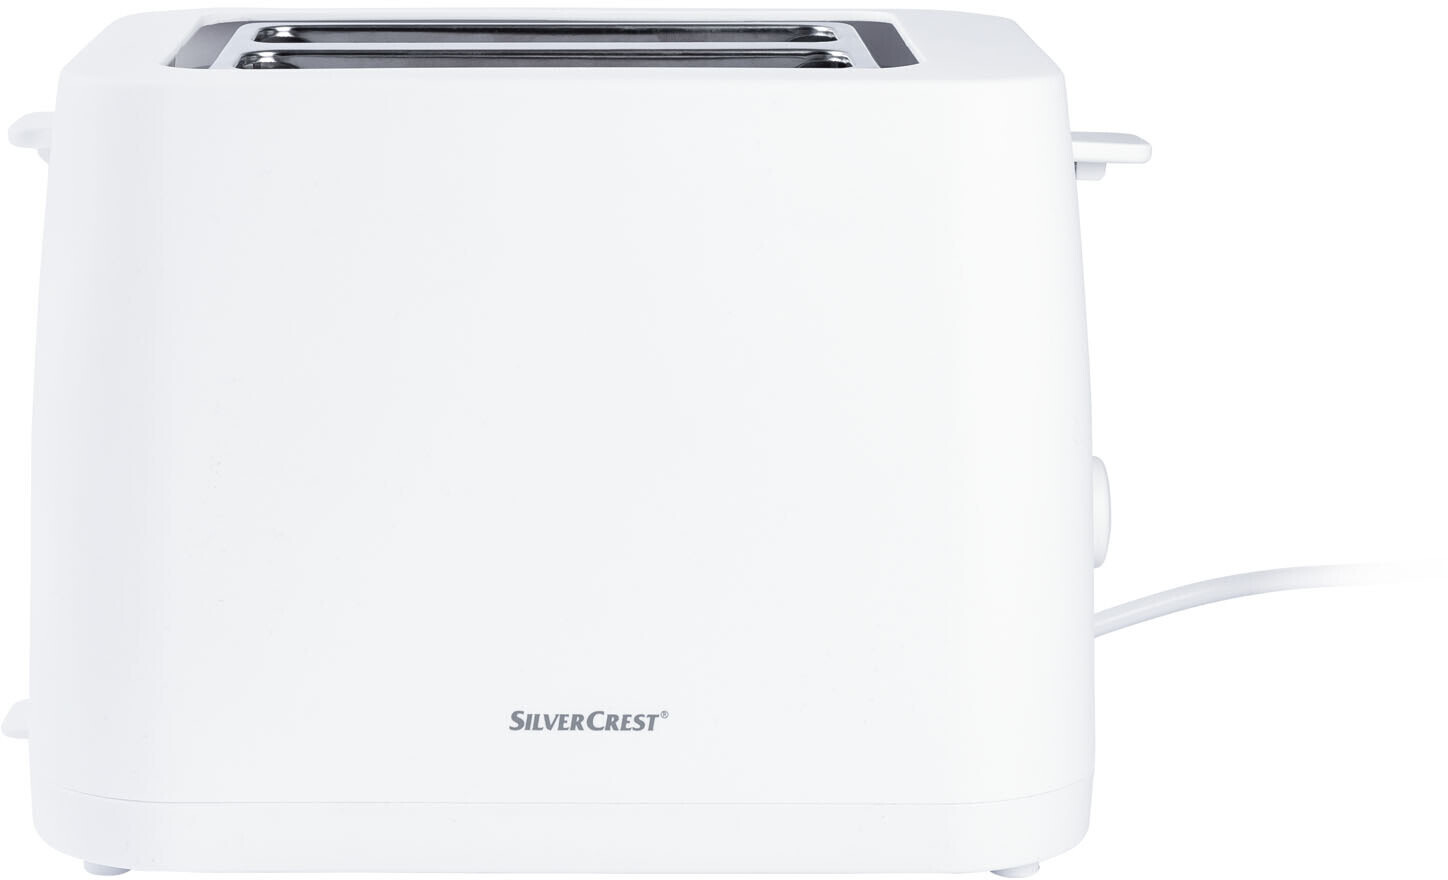 Silvercrest Doppelschlitz-Toaster ab 19,90 € | Preisvergleich bei